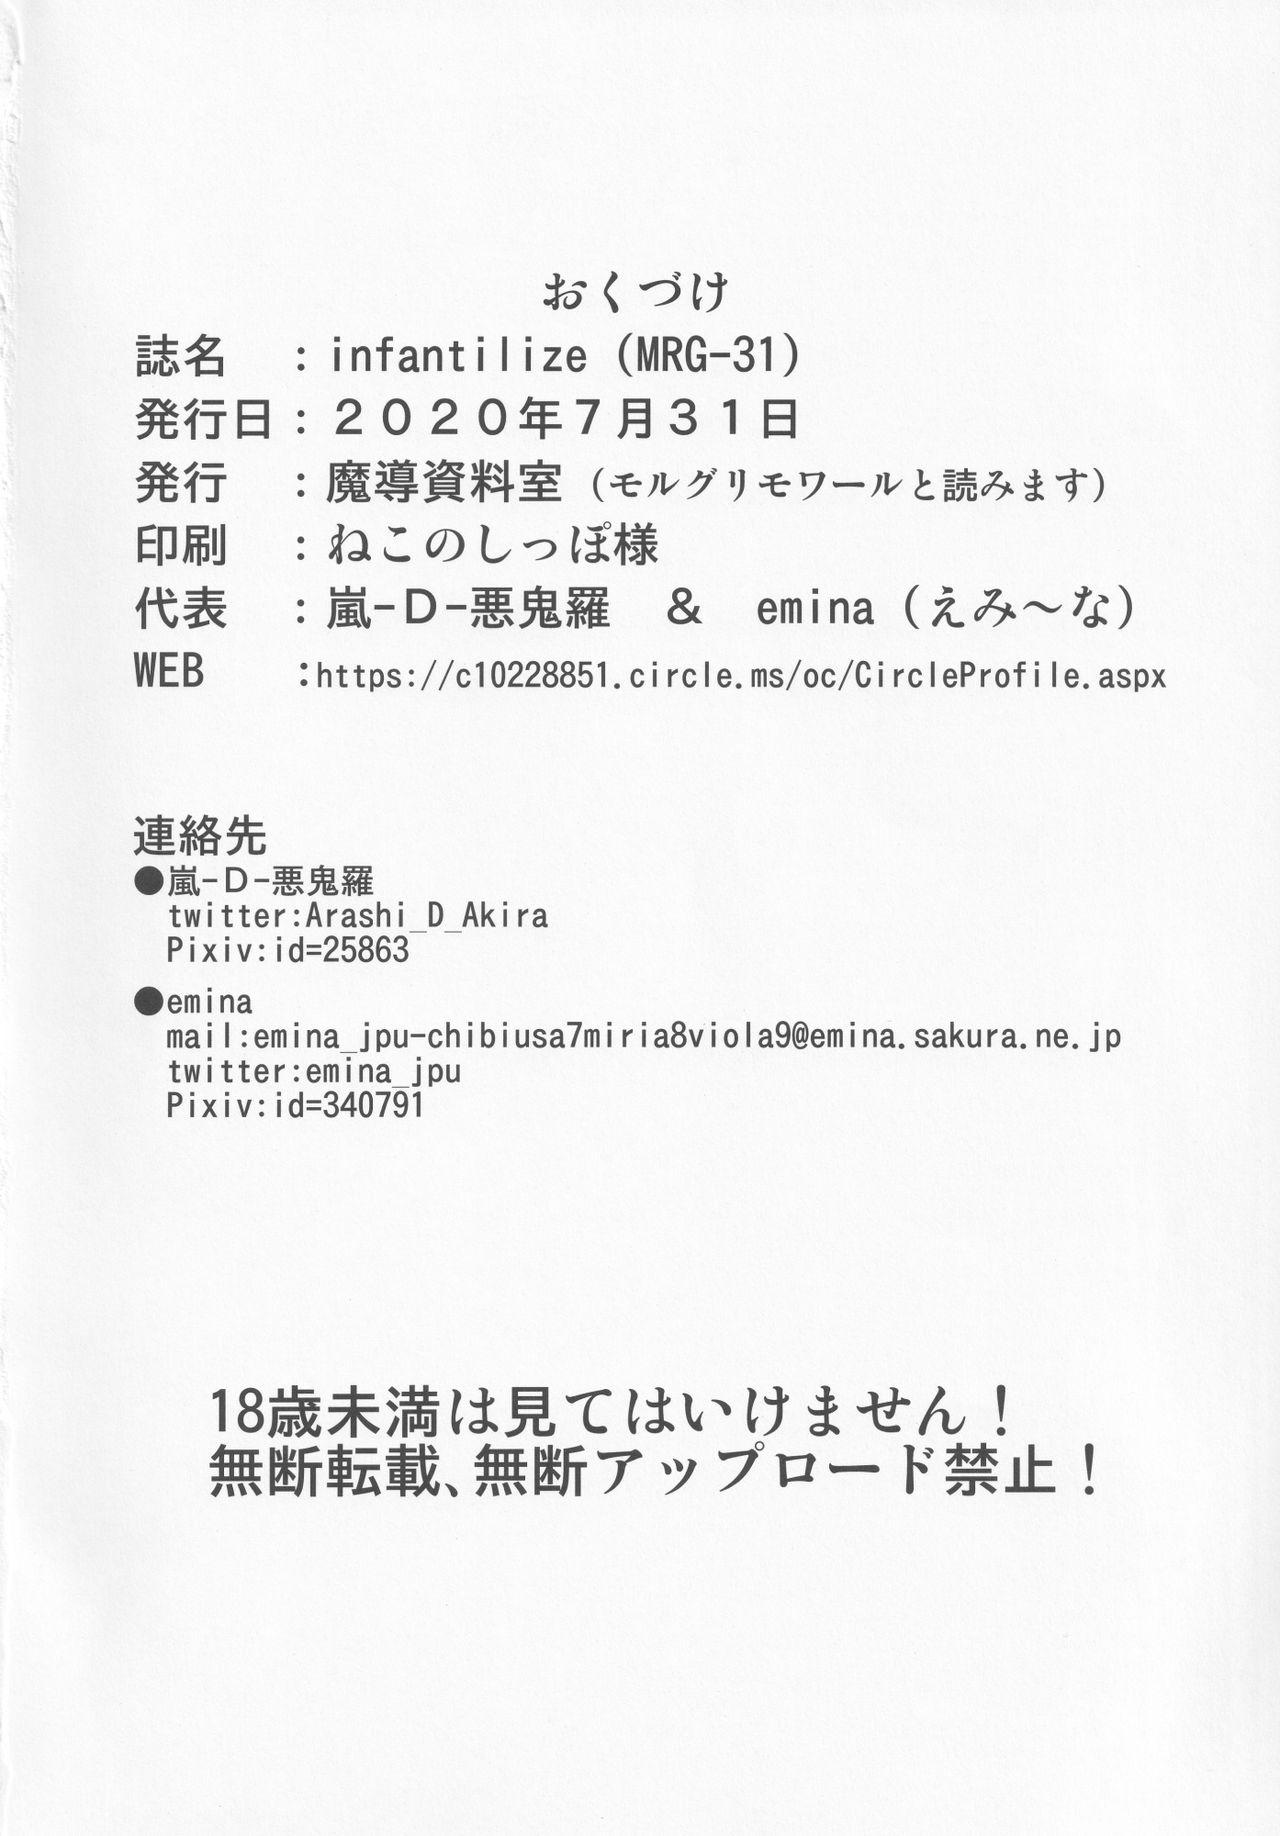 [魔導資料室 (嵐-D-悪鬼羅、佐々木てろん、emina)] infantilize (東方Project)